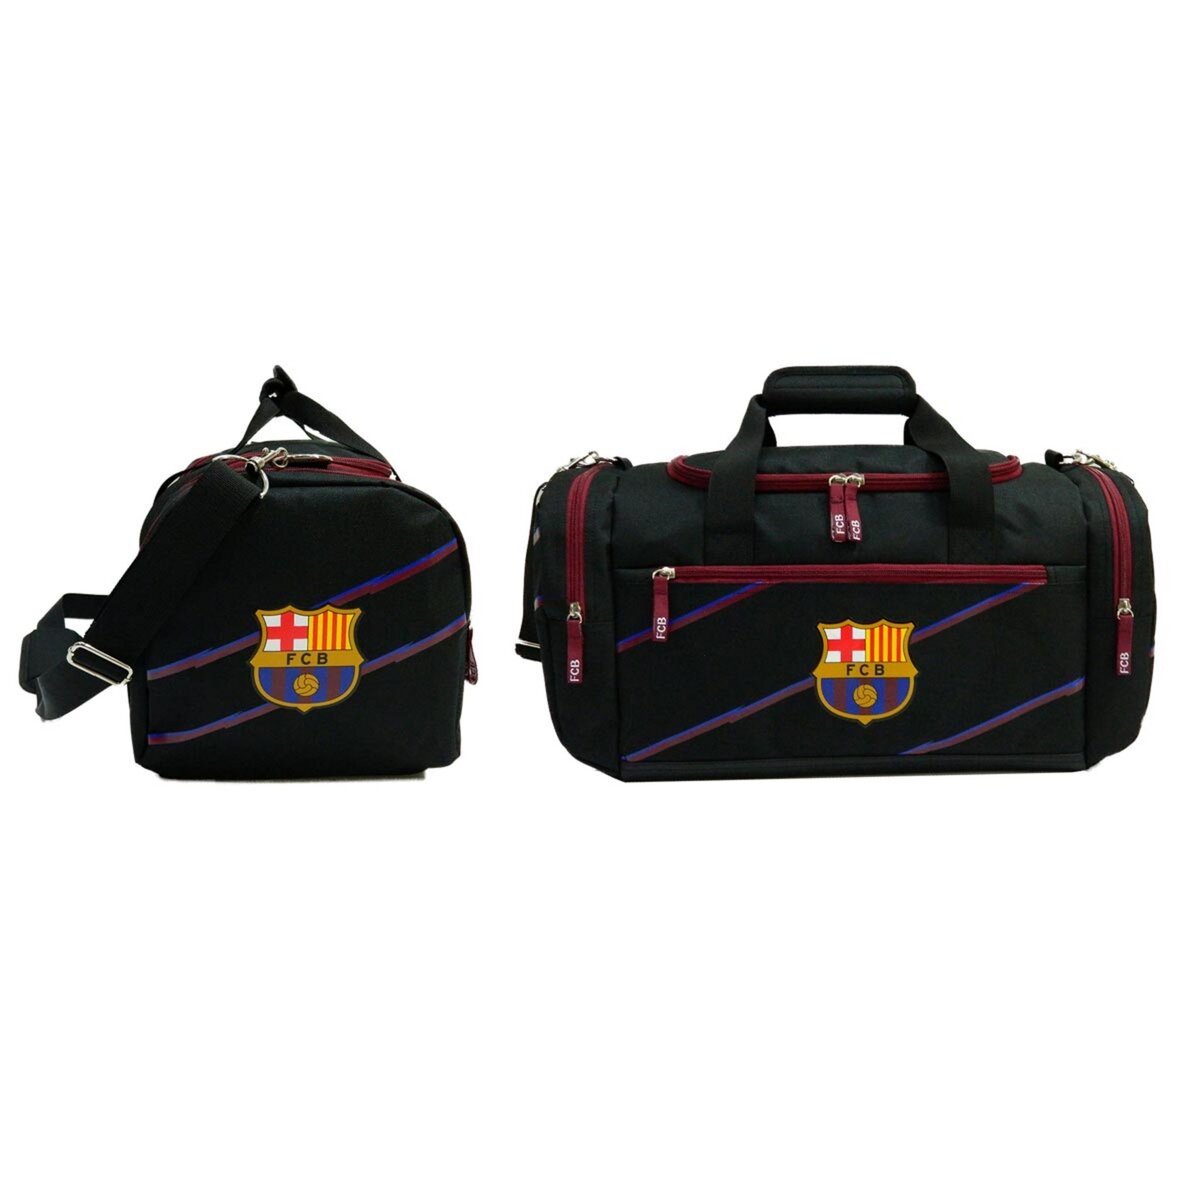  Sac de sport 1 compartiment + 3 poches 50cm garçon FC Barcelone noir